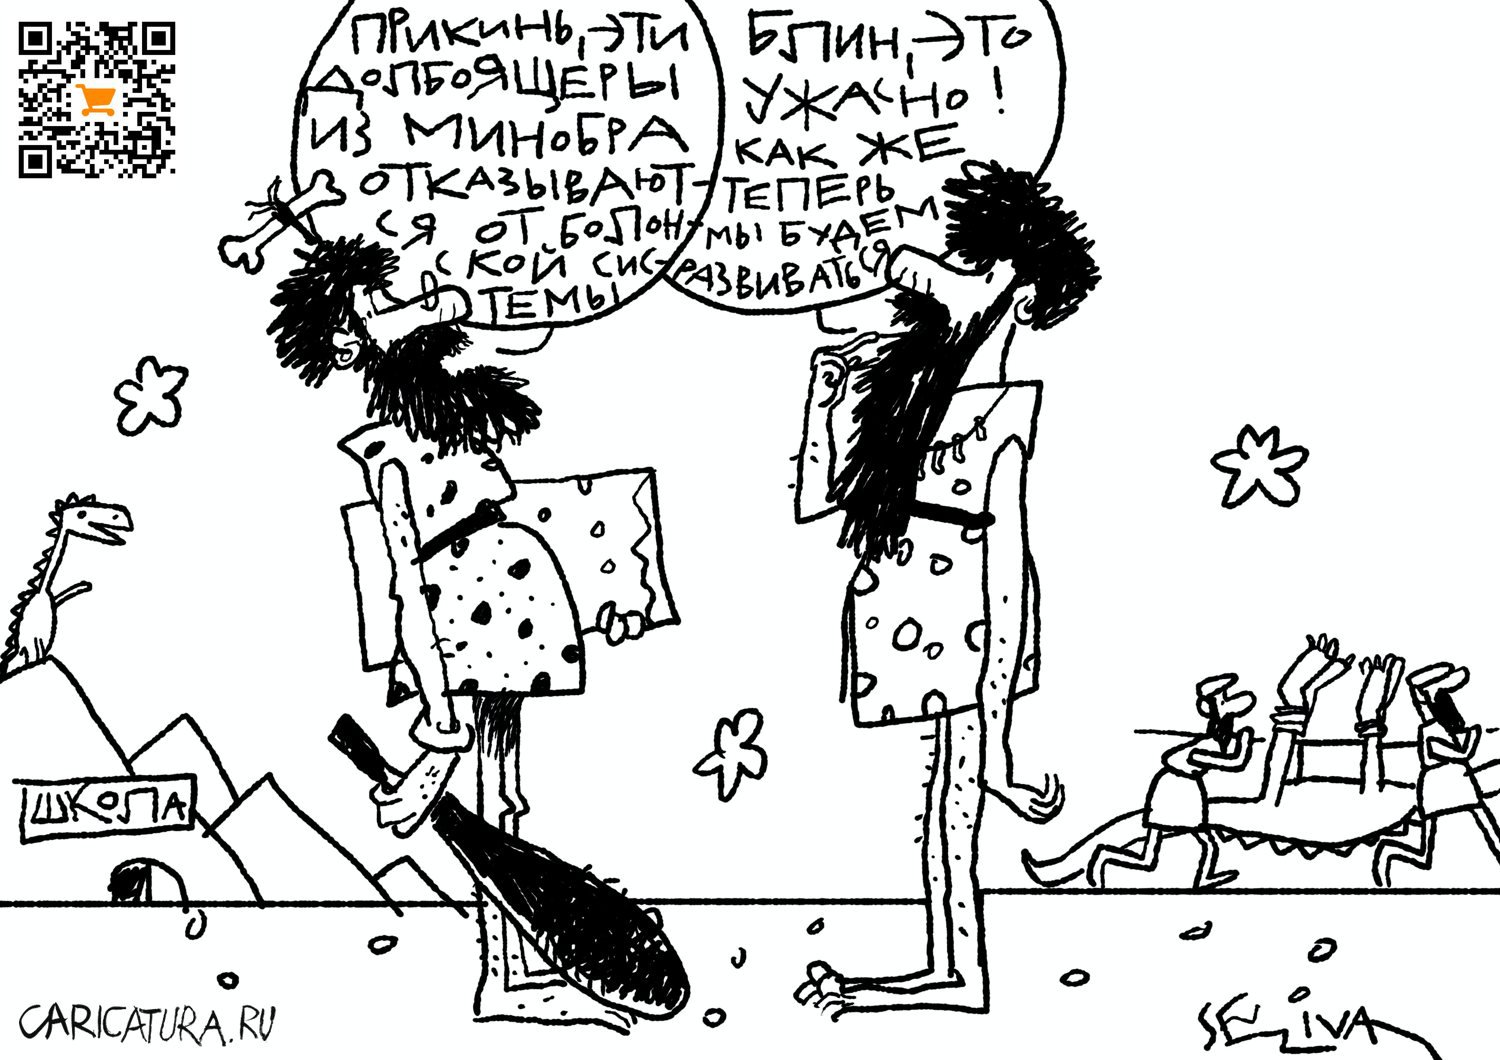 Карикатура "Новости образования", Андрей Селиванов